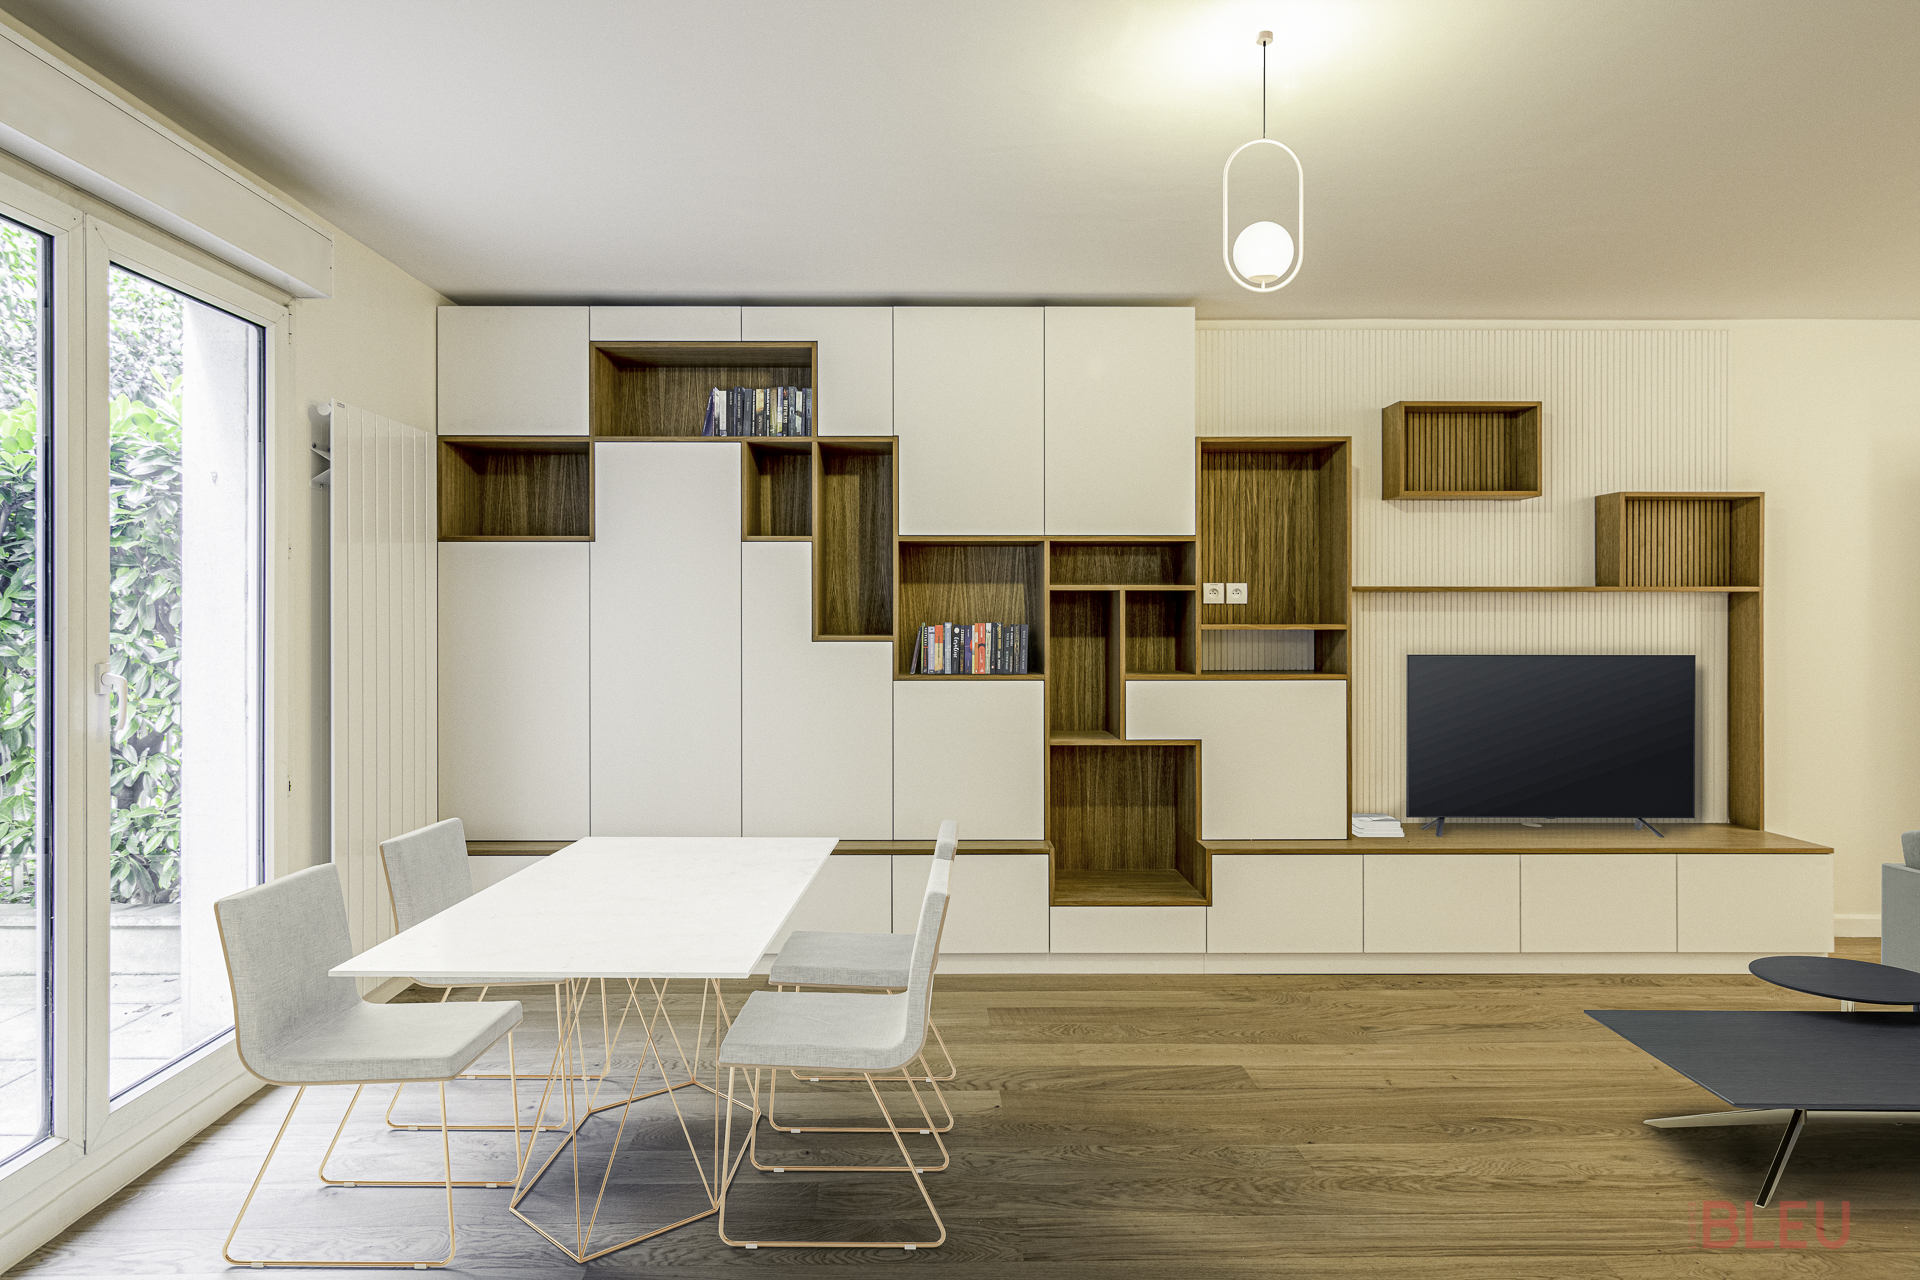 Espace de vie moderne et minimaliste dans un duplex parisien, avec coin repas élégant et rangements intégrés.